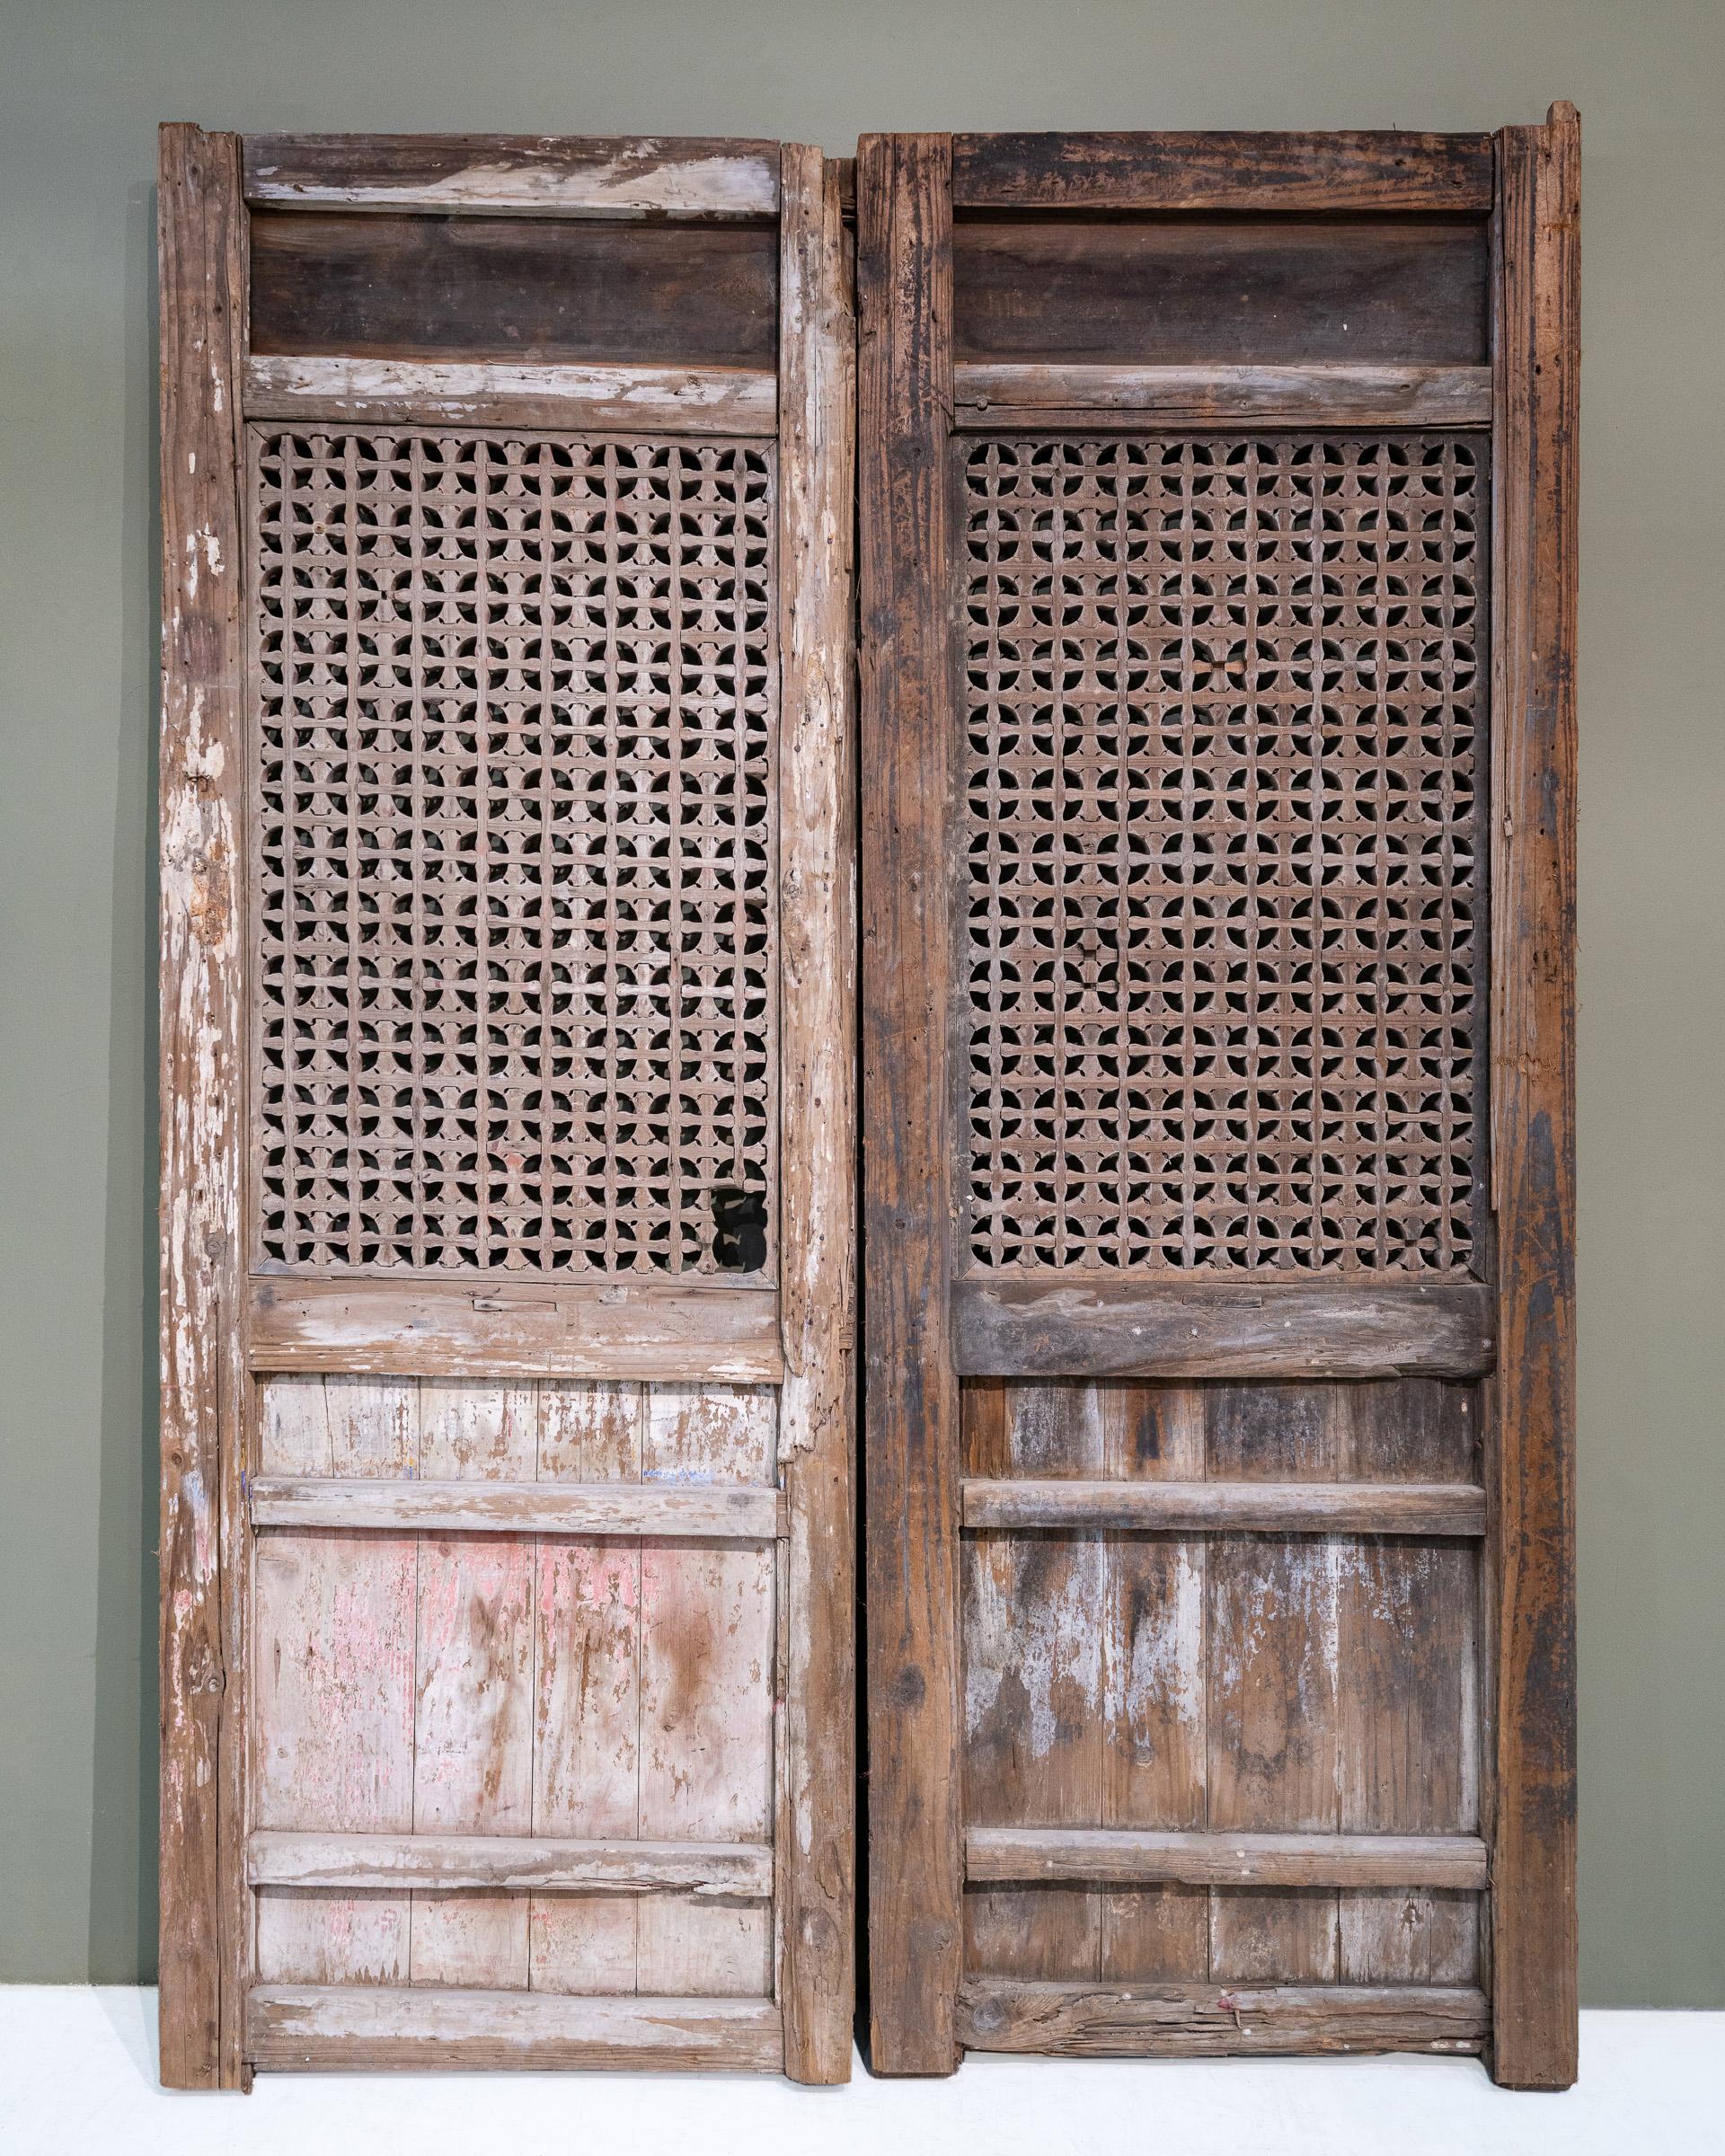 Une paire de panneaux de porte du début du 20e siècle de la province de Fujian, en Chine. Les panneaux supérieurs présentent de magnifiques sculptures en relief représentant des fleurs de cerisier, le cédrat de Bouddha et des citrouilles. Le motif